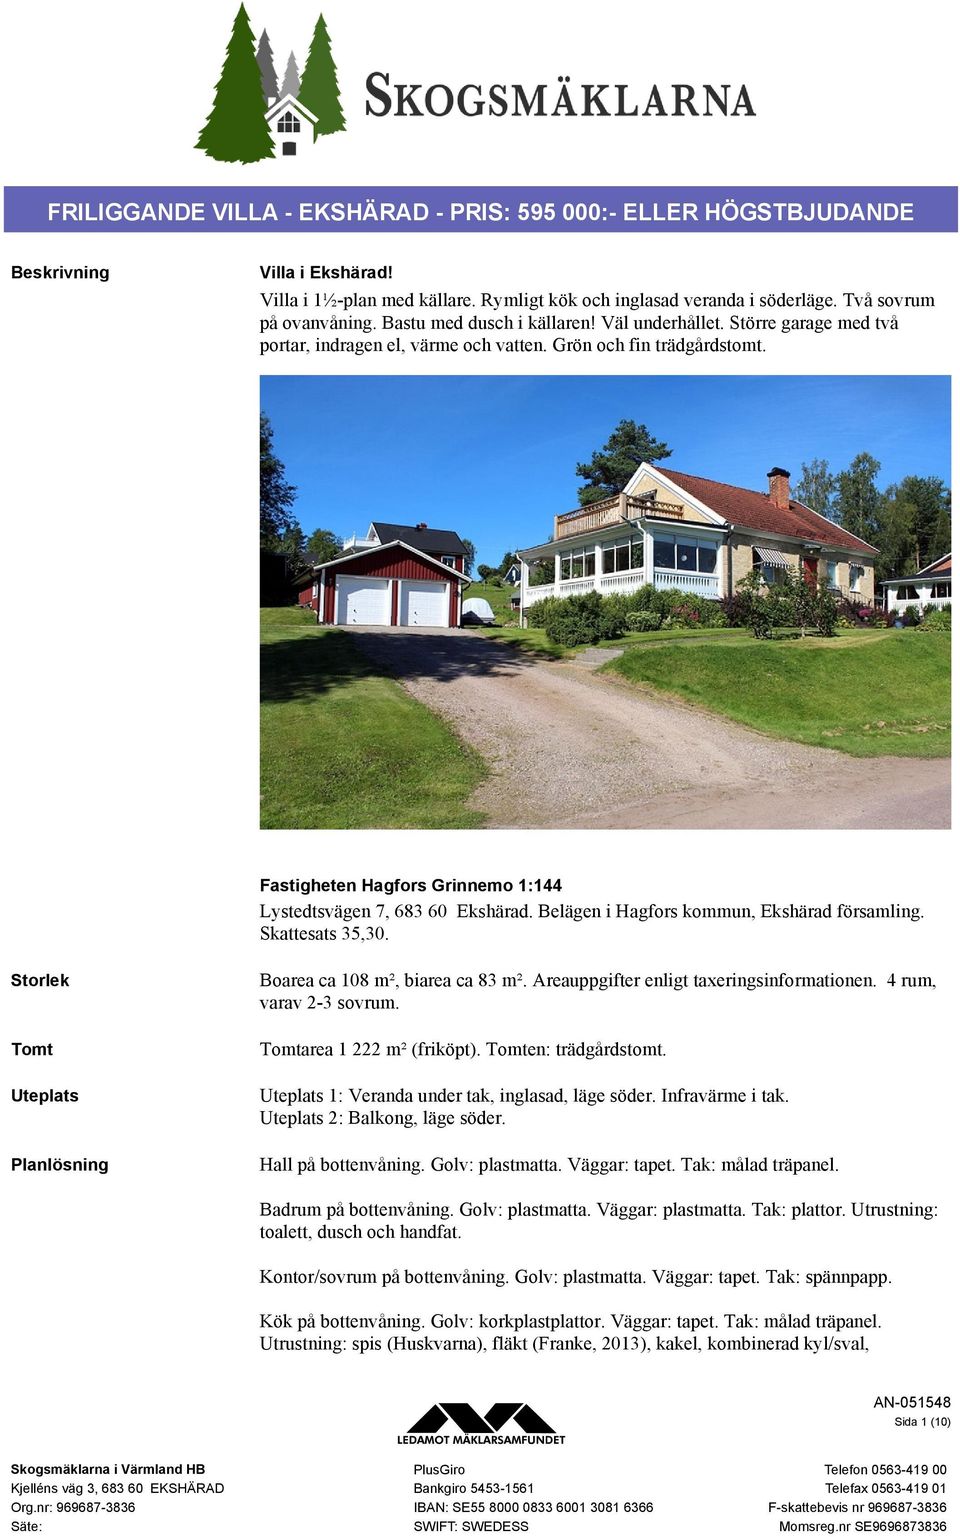 Fastigheten Hagfors Grinnemo 1:144 Lystedtsvägen 7, 683 60 Ekshärad. Belägen i Hagfors kommun, Ekshärad församling. Skattesats 35,30.